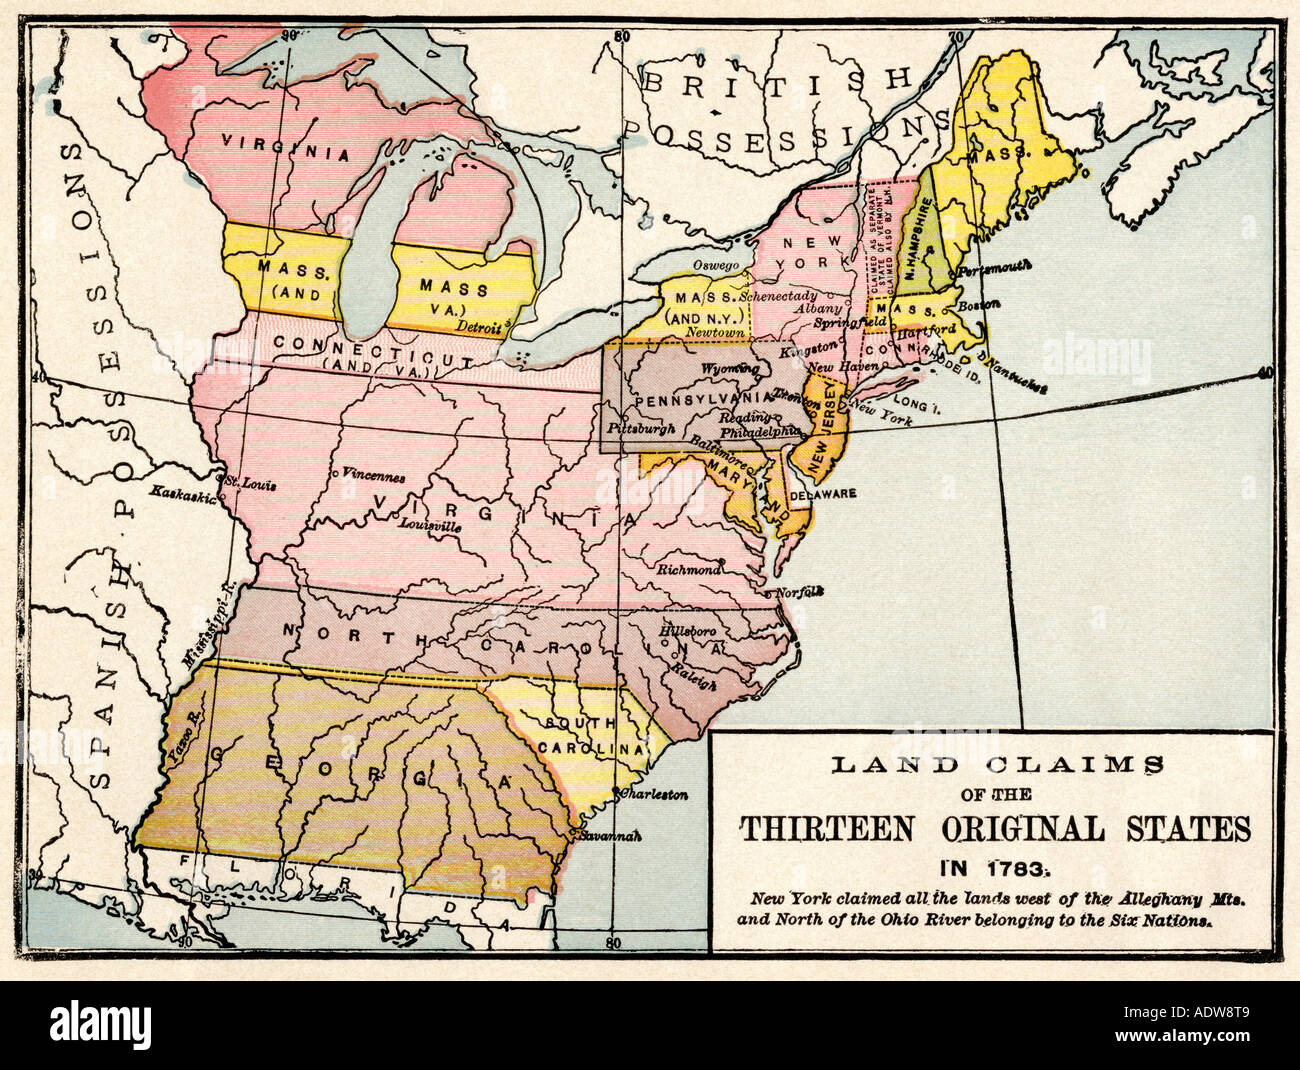 Carte montrant des revendications territoriales des treize premiers États 1783. Lithographie couleur Banque D'Images